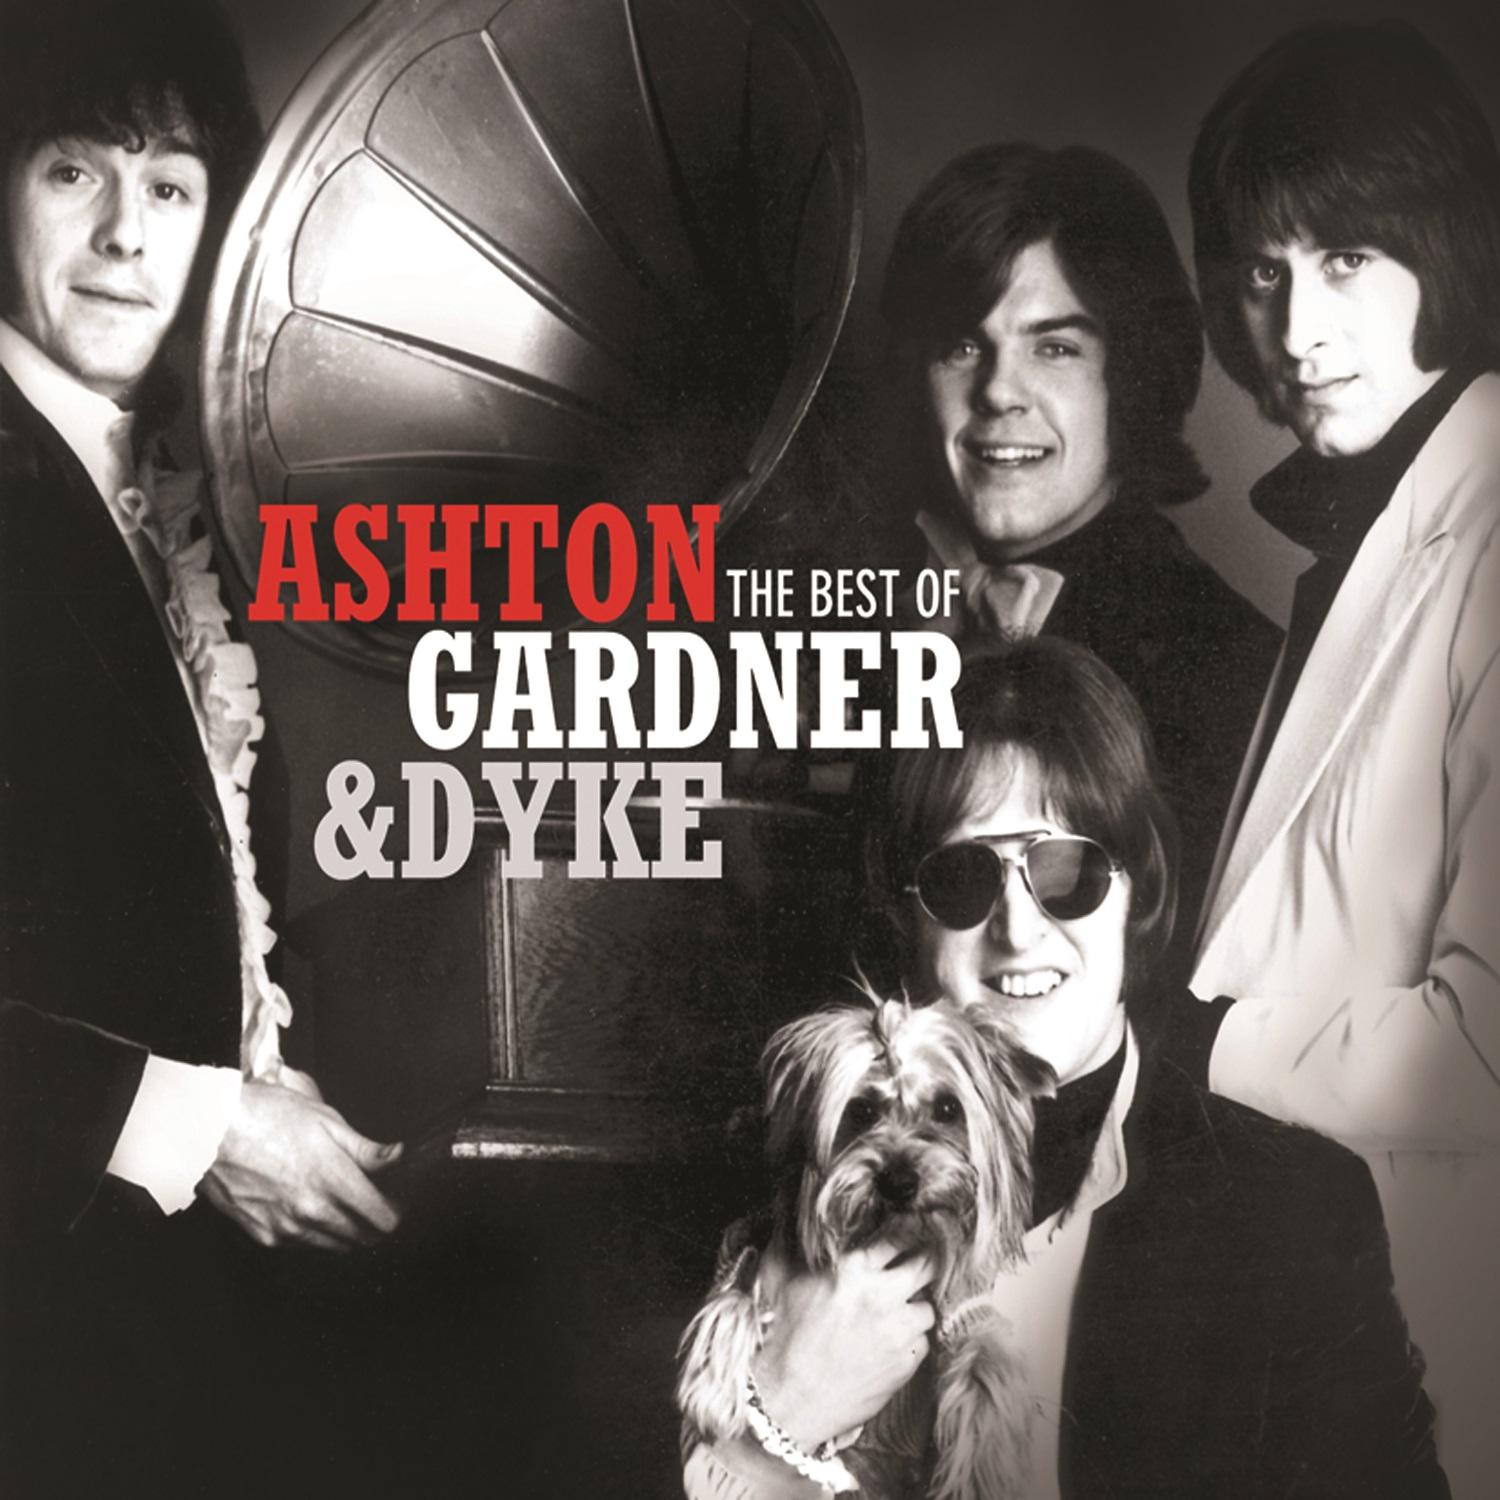 The Best of Ashton Gardner & Dyke